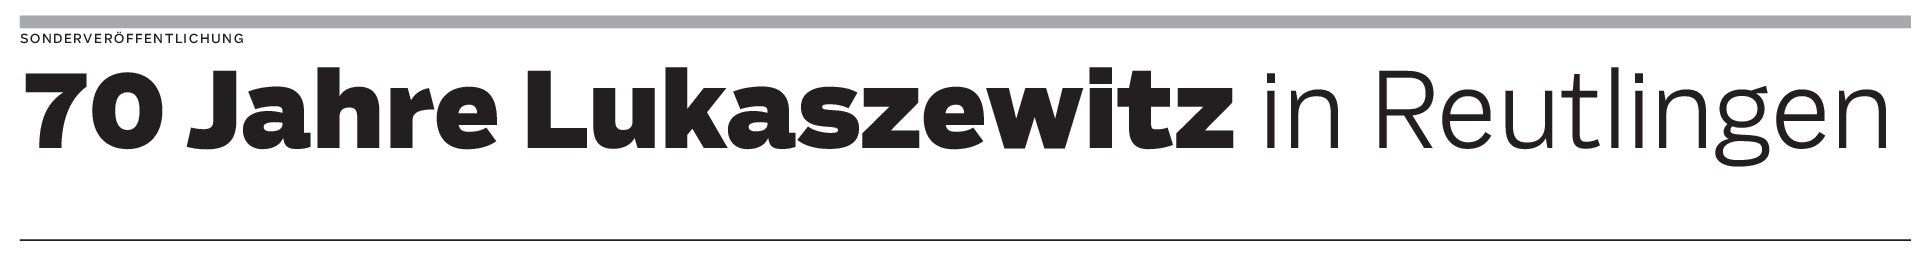 70 Jahre Lukaszewitz in Reutlingen: Schöner wohnen